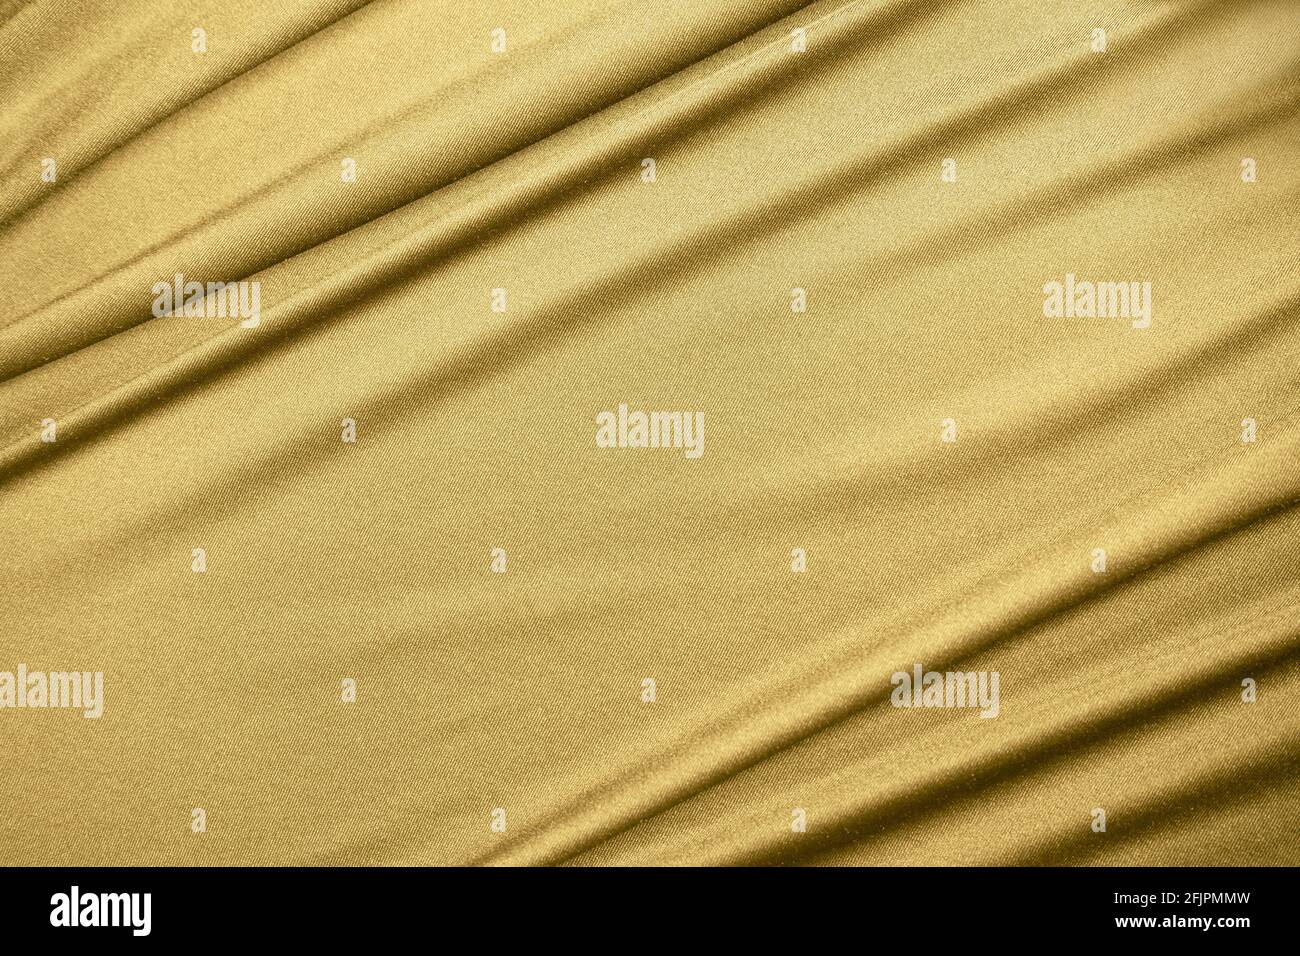 Lujoso fondo de textura de tejido dorado Foto de stock